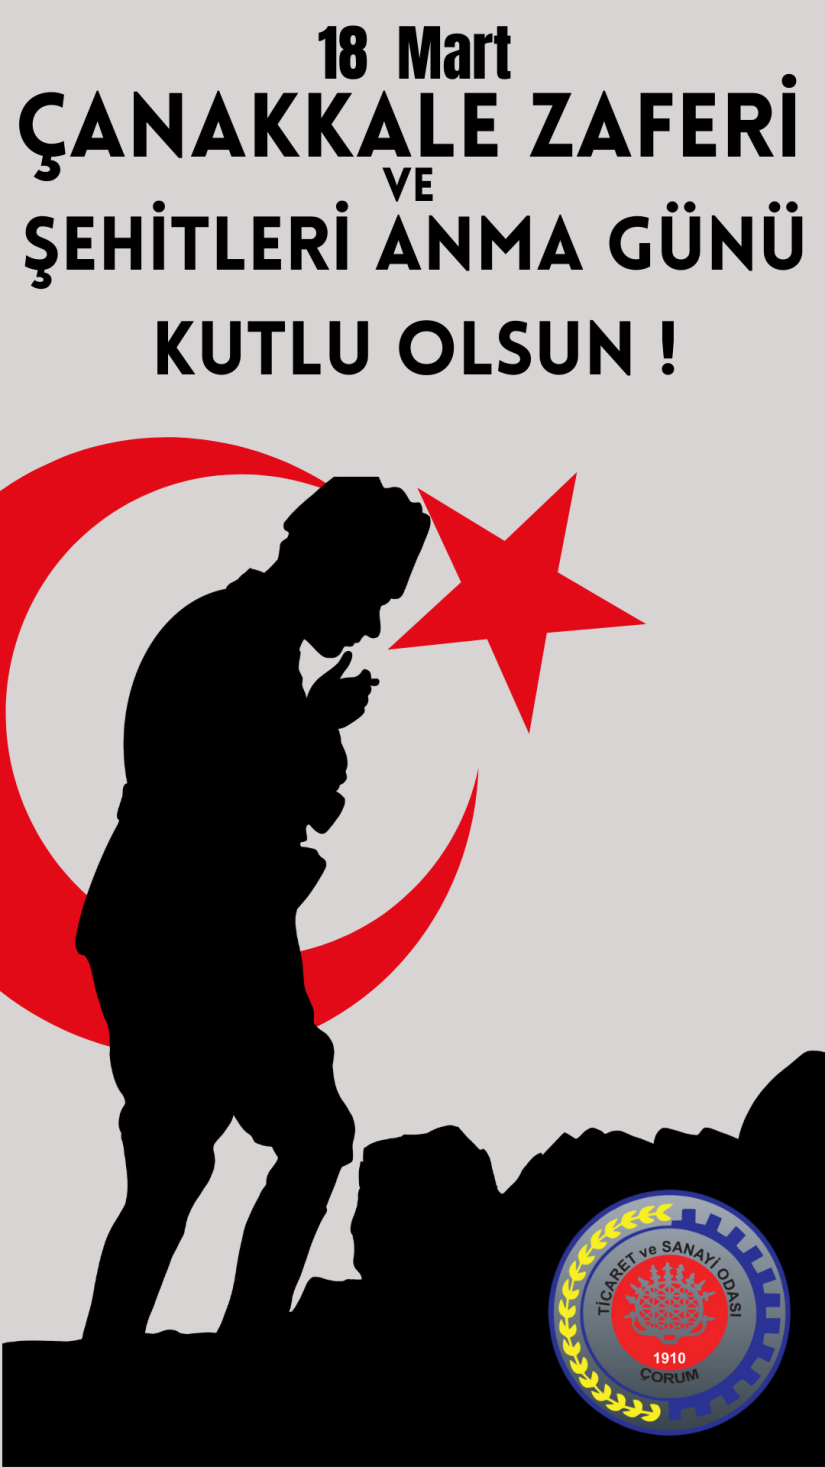 18 Mart Şehitleri Anma Günü ve Çanakkale Zaferi'mizin 109. Yıl dönümünü kutluyor, başta Gazi Mustafa Kemal Atatürk ve silah arkadaşları olmak üzere tüm Şehitlerimizi minnet ve şükranla anıyoruz.